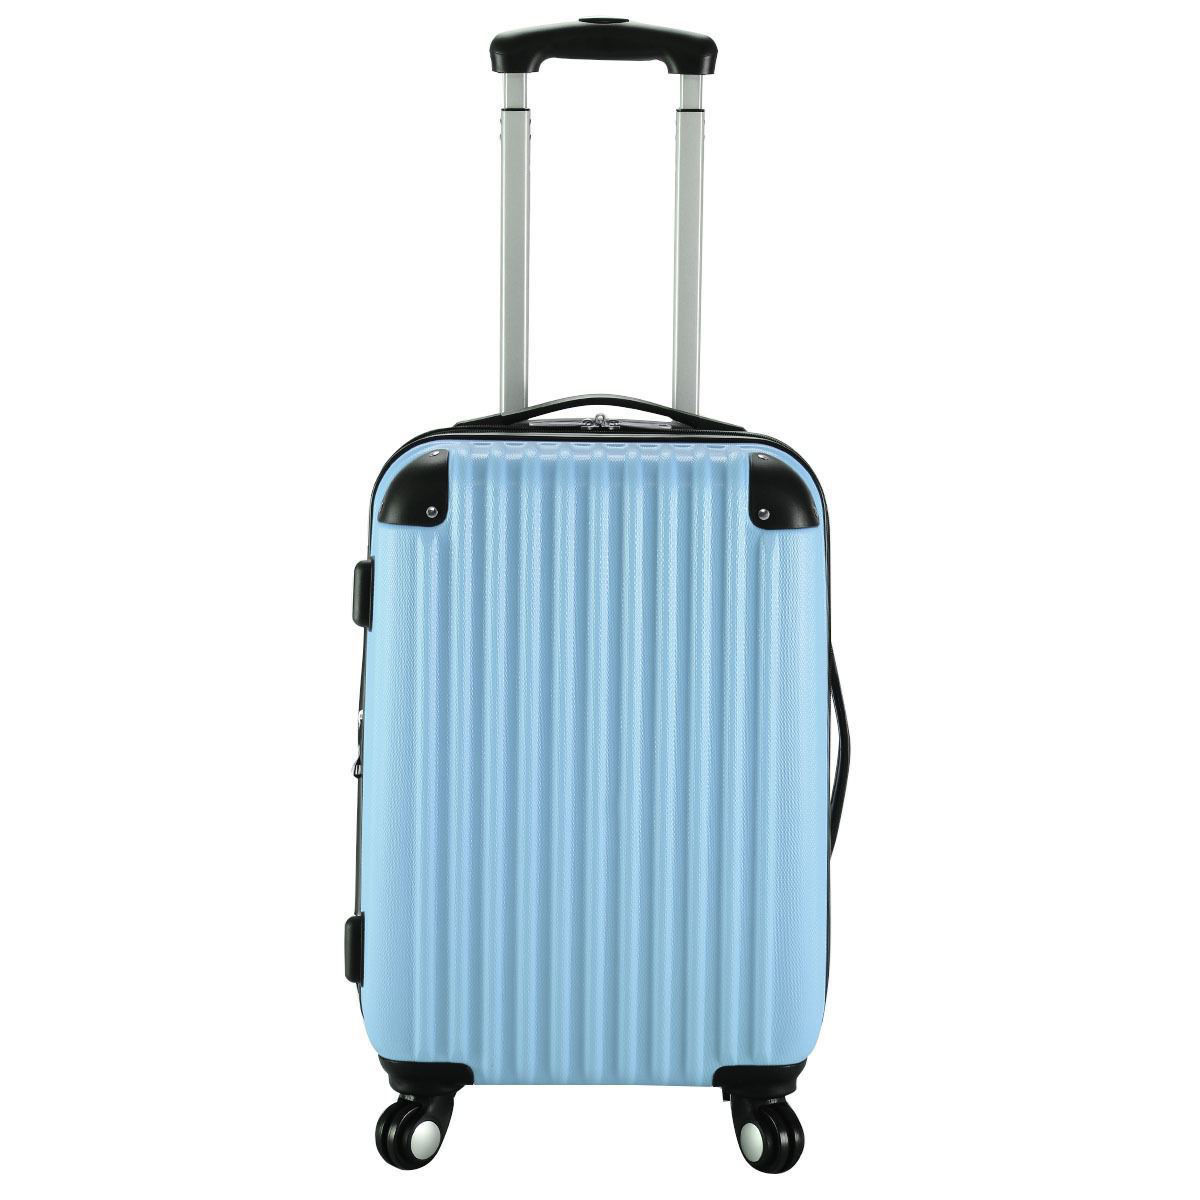 Convenience Boutique / Trolley Suitcase Expandable - 20